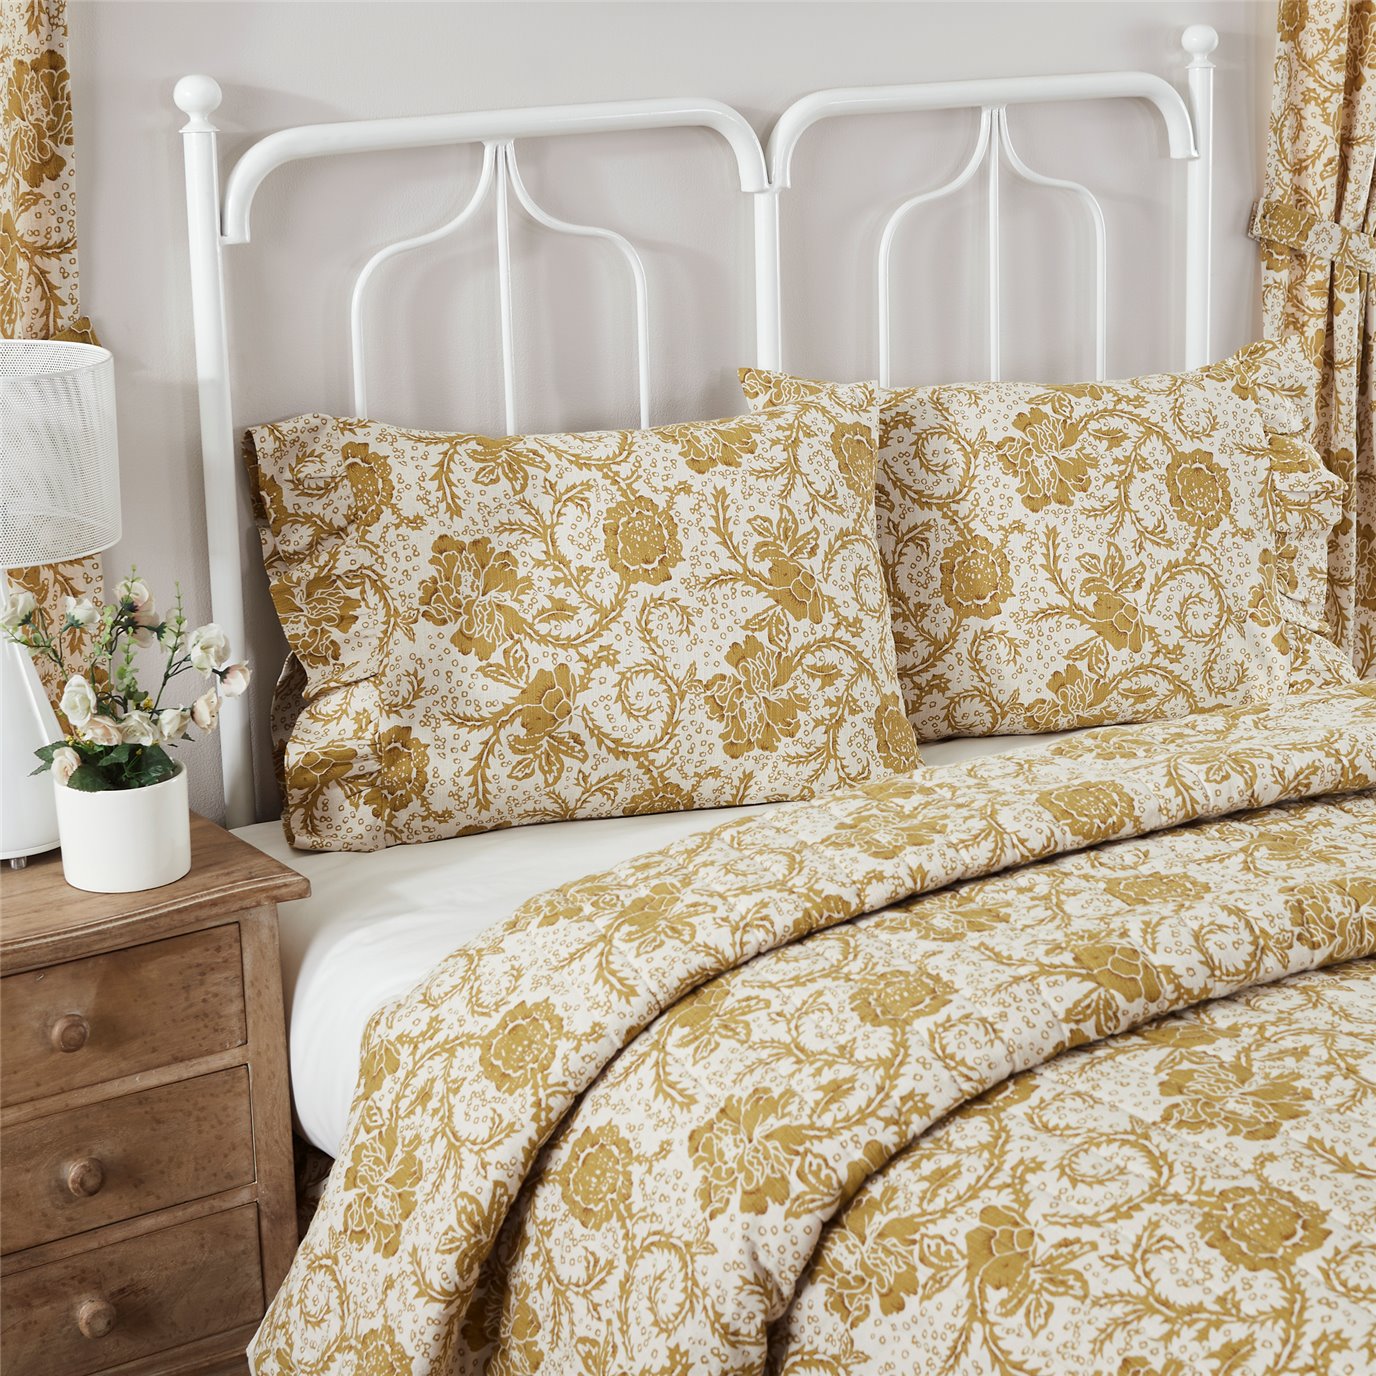 Dorset Gold Floral Ruffled Standard Pillow Case Set of 2 21x26+4